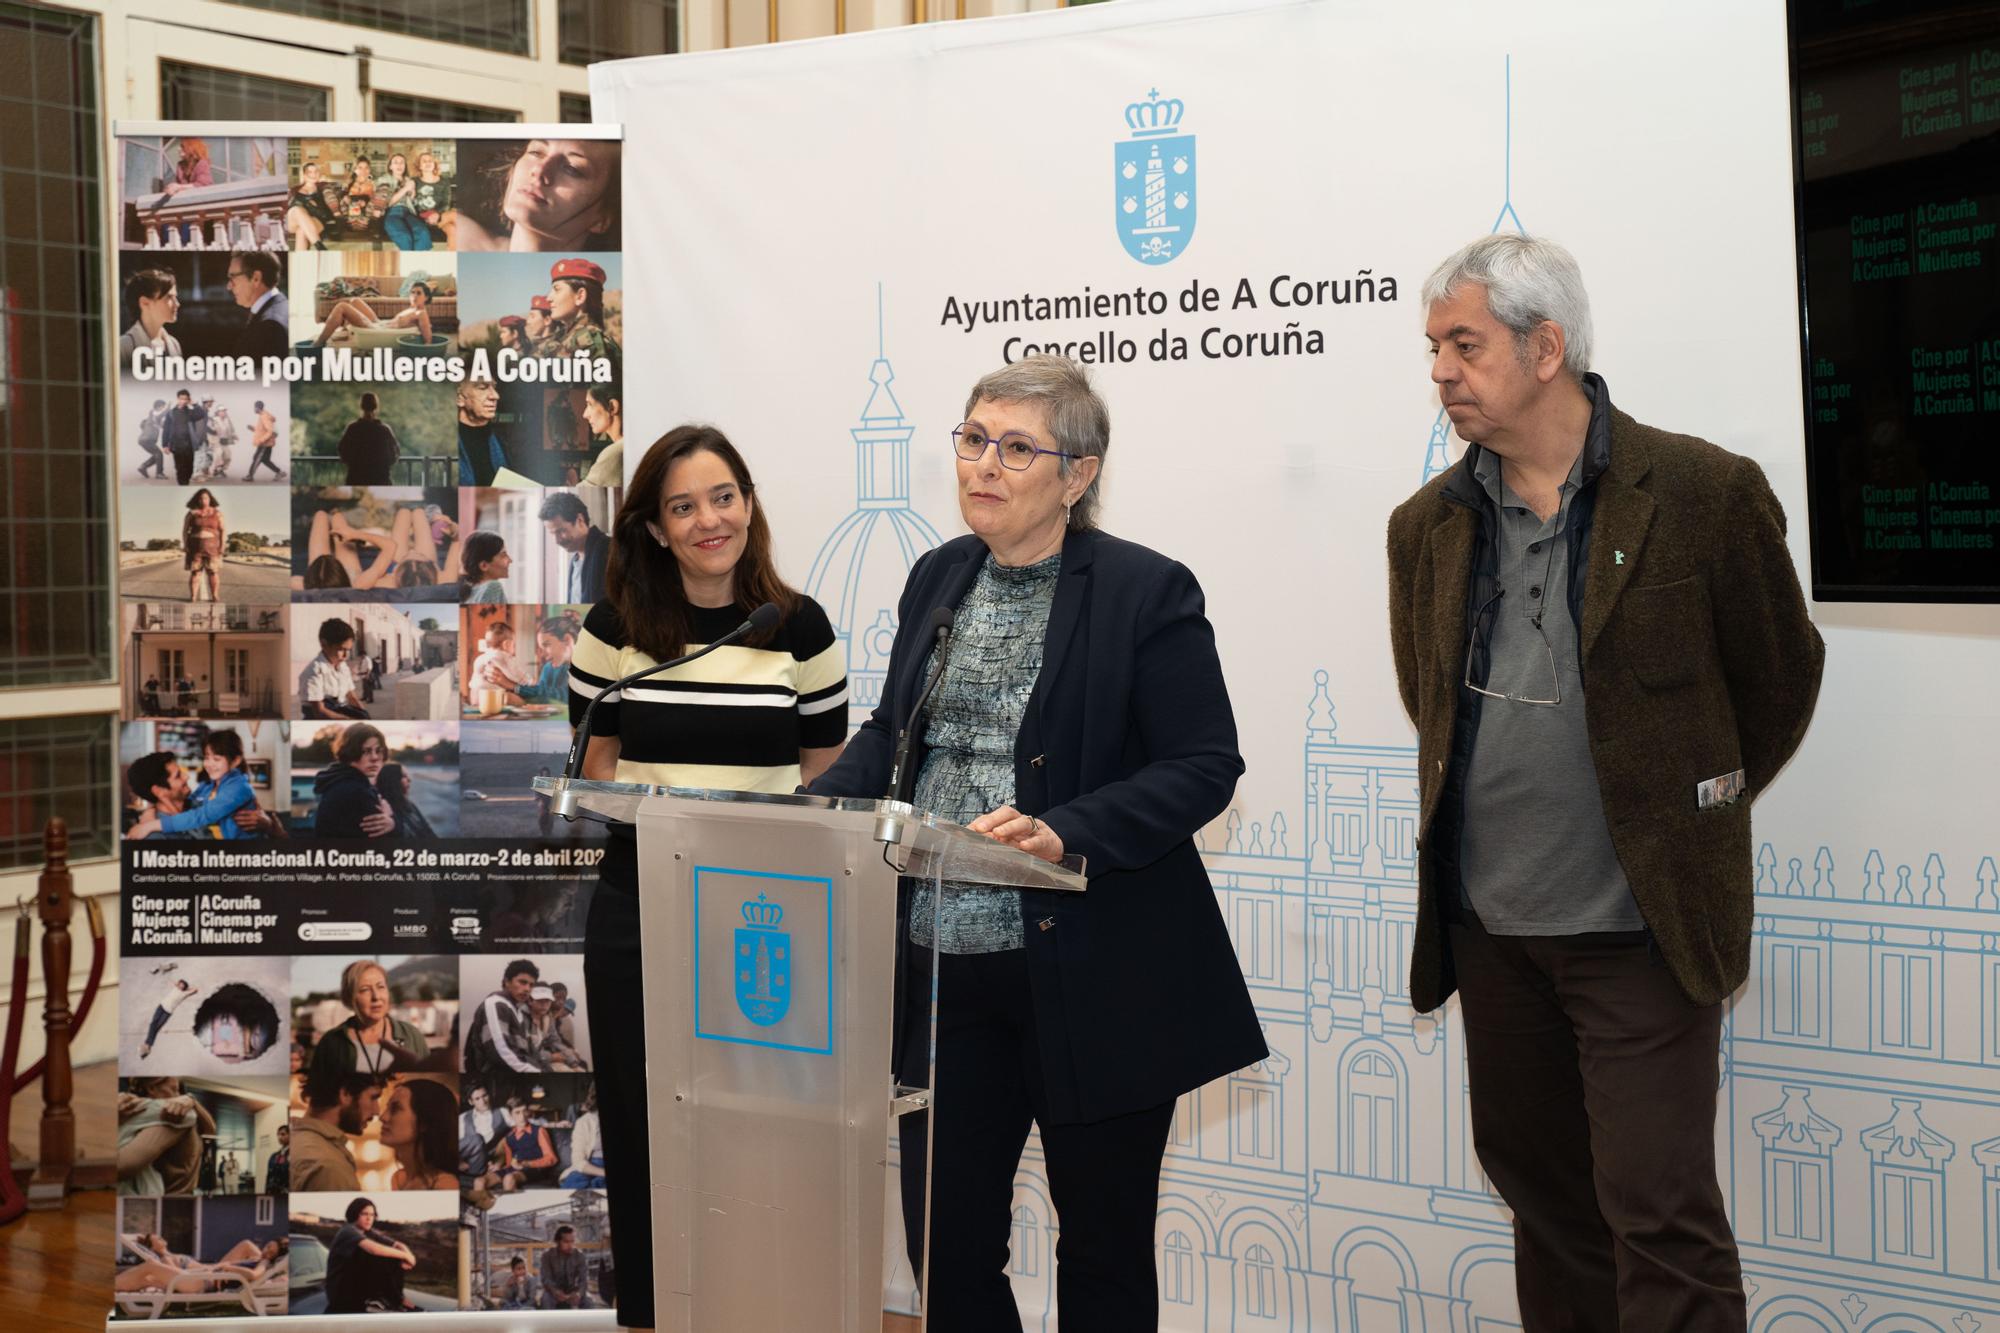 Presentación de la I Mostra de Cinema por Mulleres A Coruña